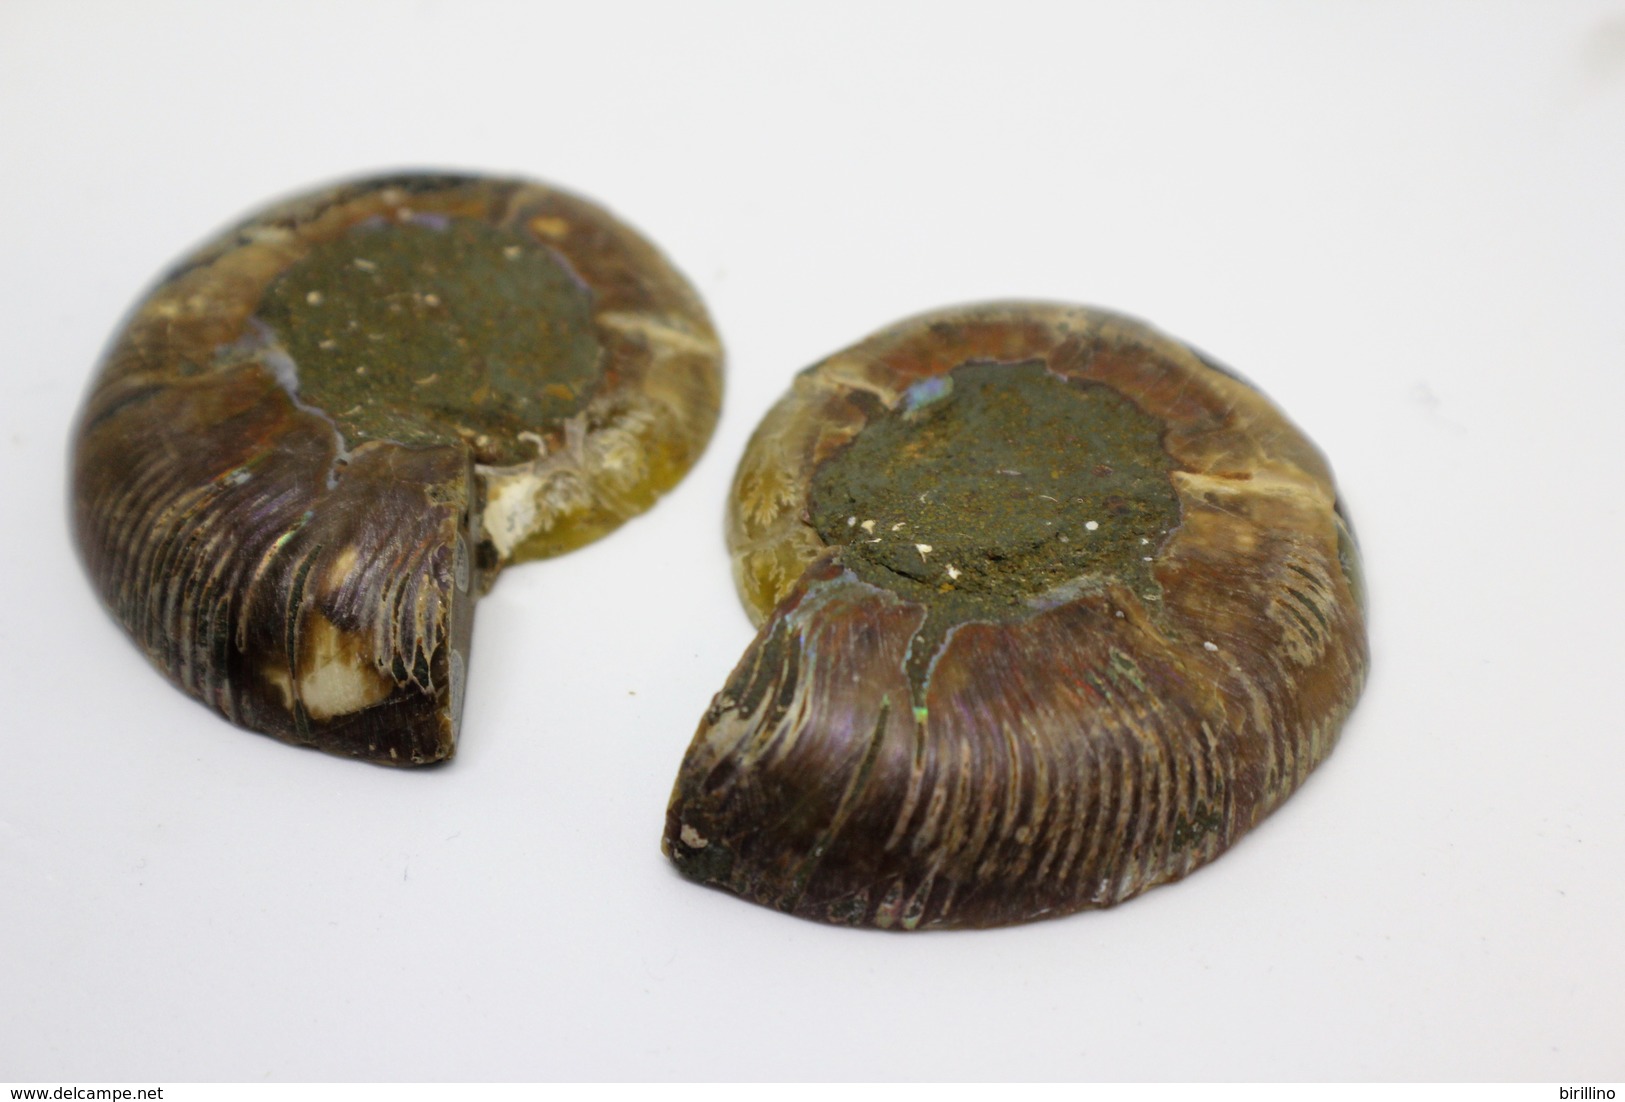 832 - Fossile di ammonite - Provenienza Madagascar